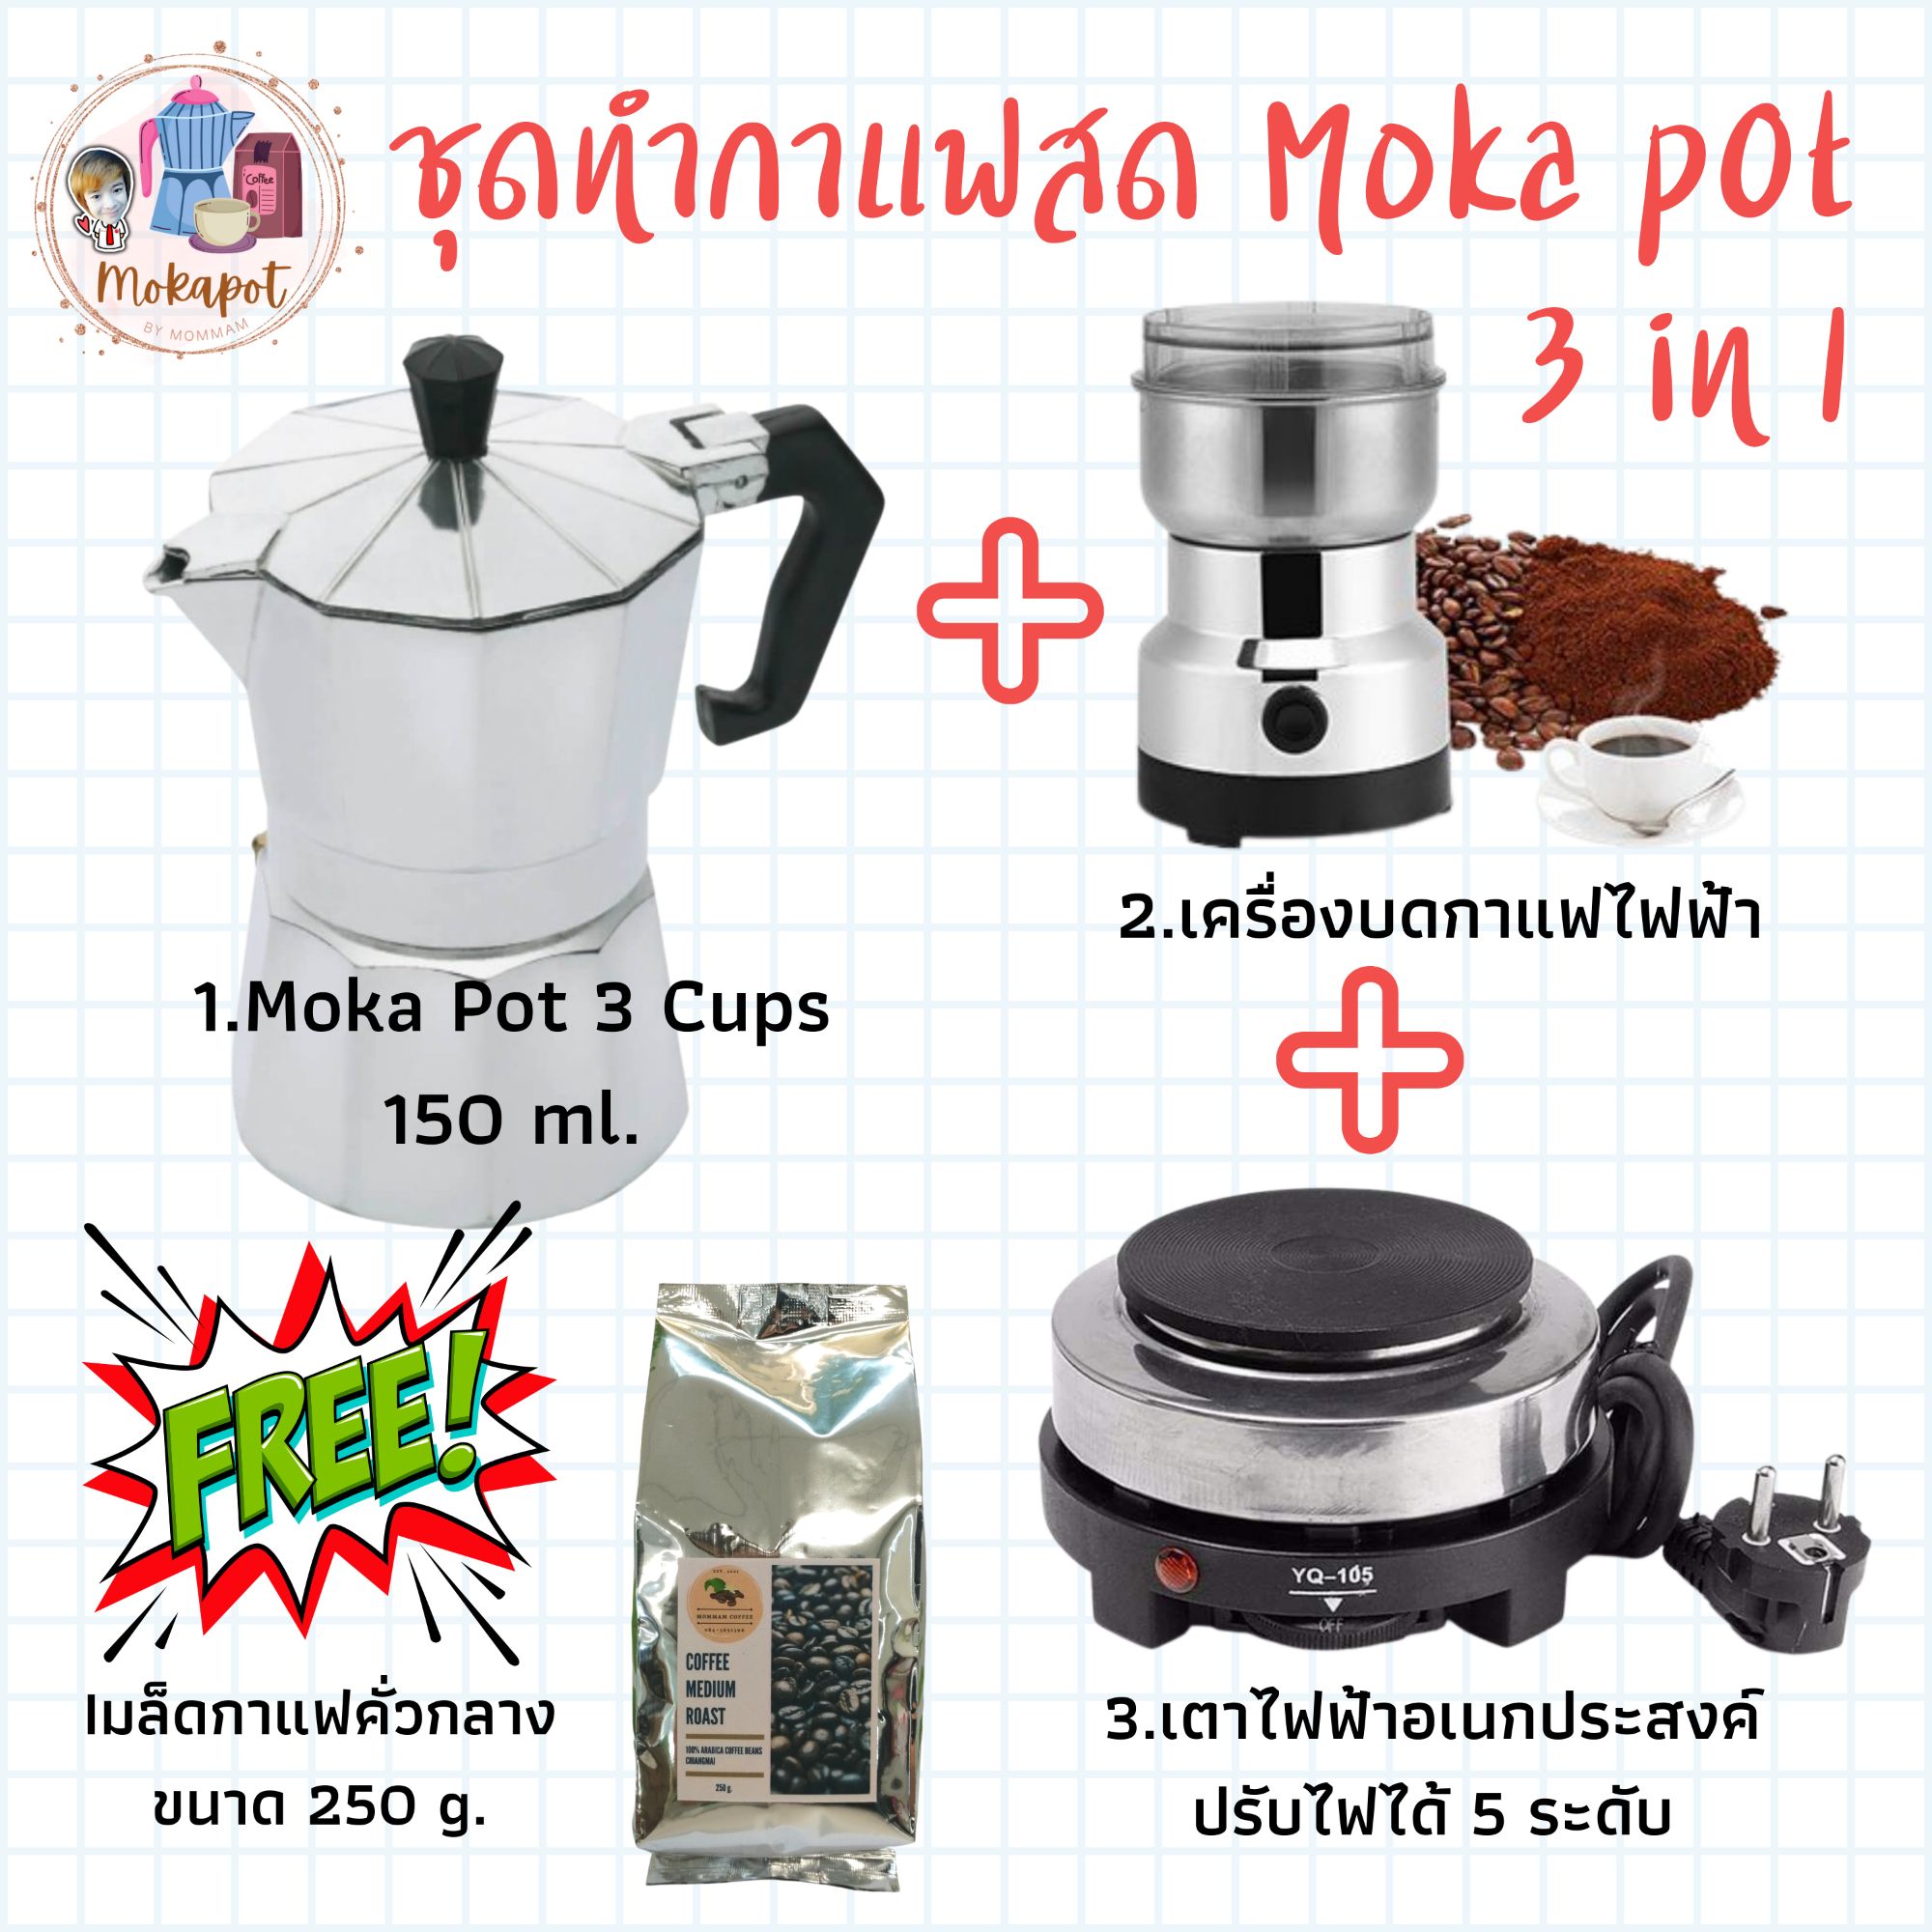 ชุดชงกาแฟสด Mokapot SET E ,กาต้มกาแฟ 3 cups 150 ml. + เครื่องบดกาแฟไฟฟ้า + เตาไฟฟ้า ปรับความร้อนได้ 5 ระดับ ?แถมฟรี? กาแฟคั่ว 250g.